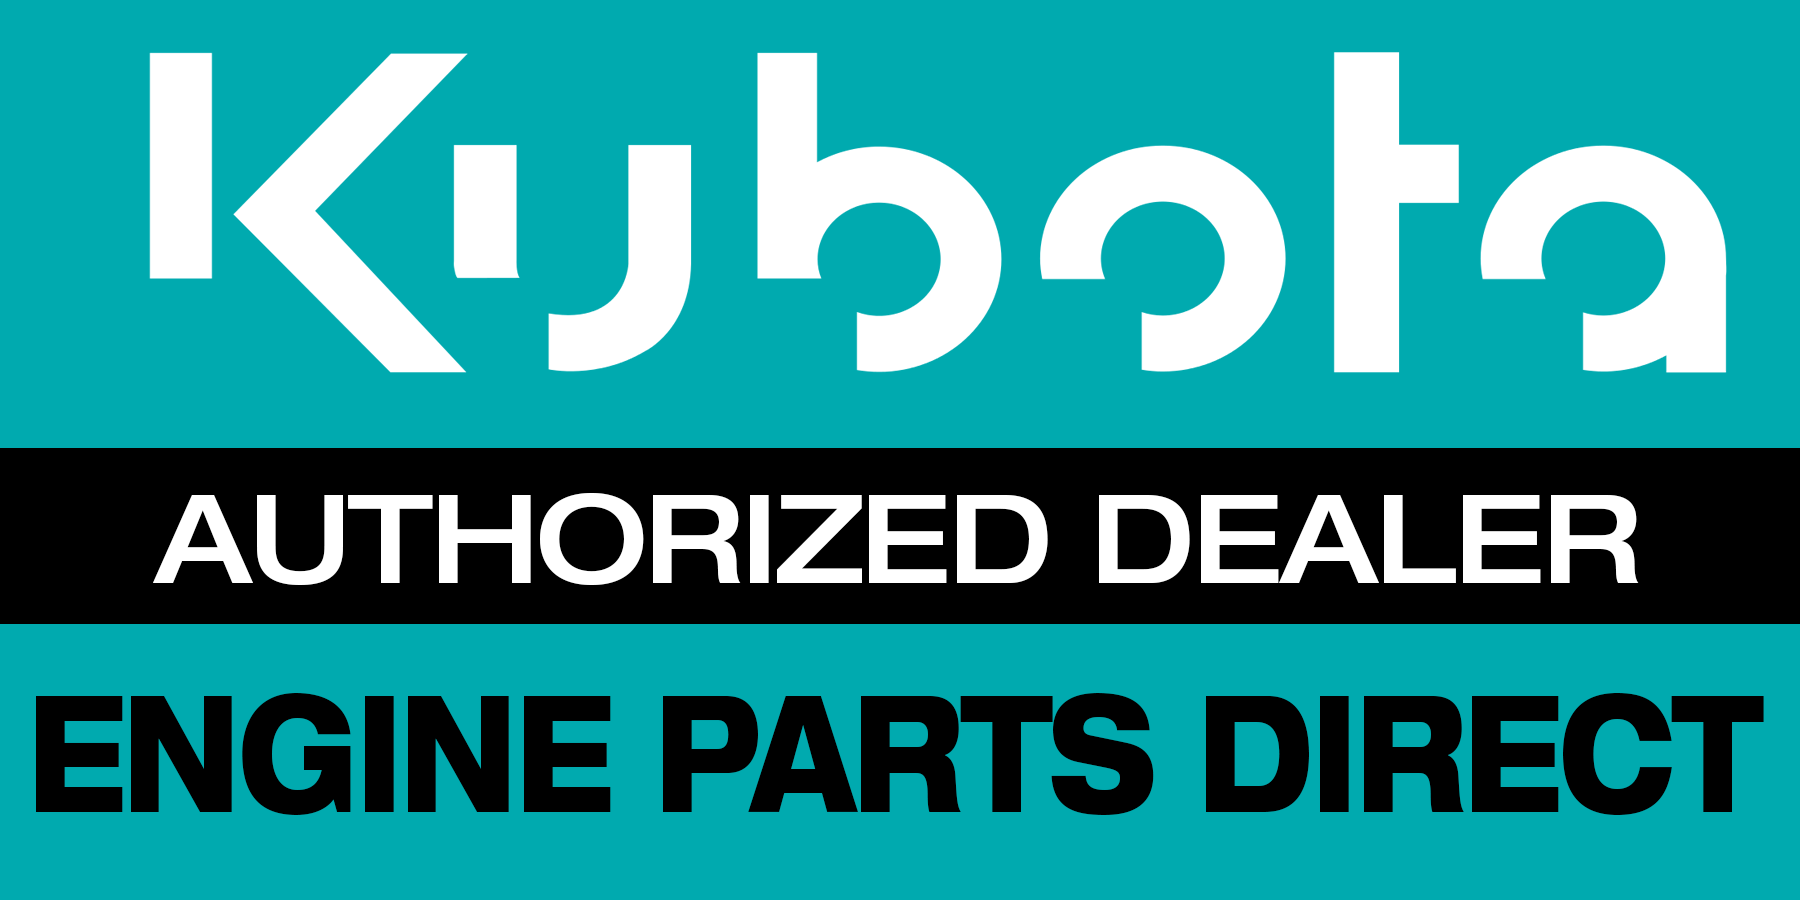 Kubota Engine Parts Direct | Authorized Dealer